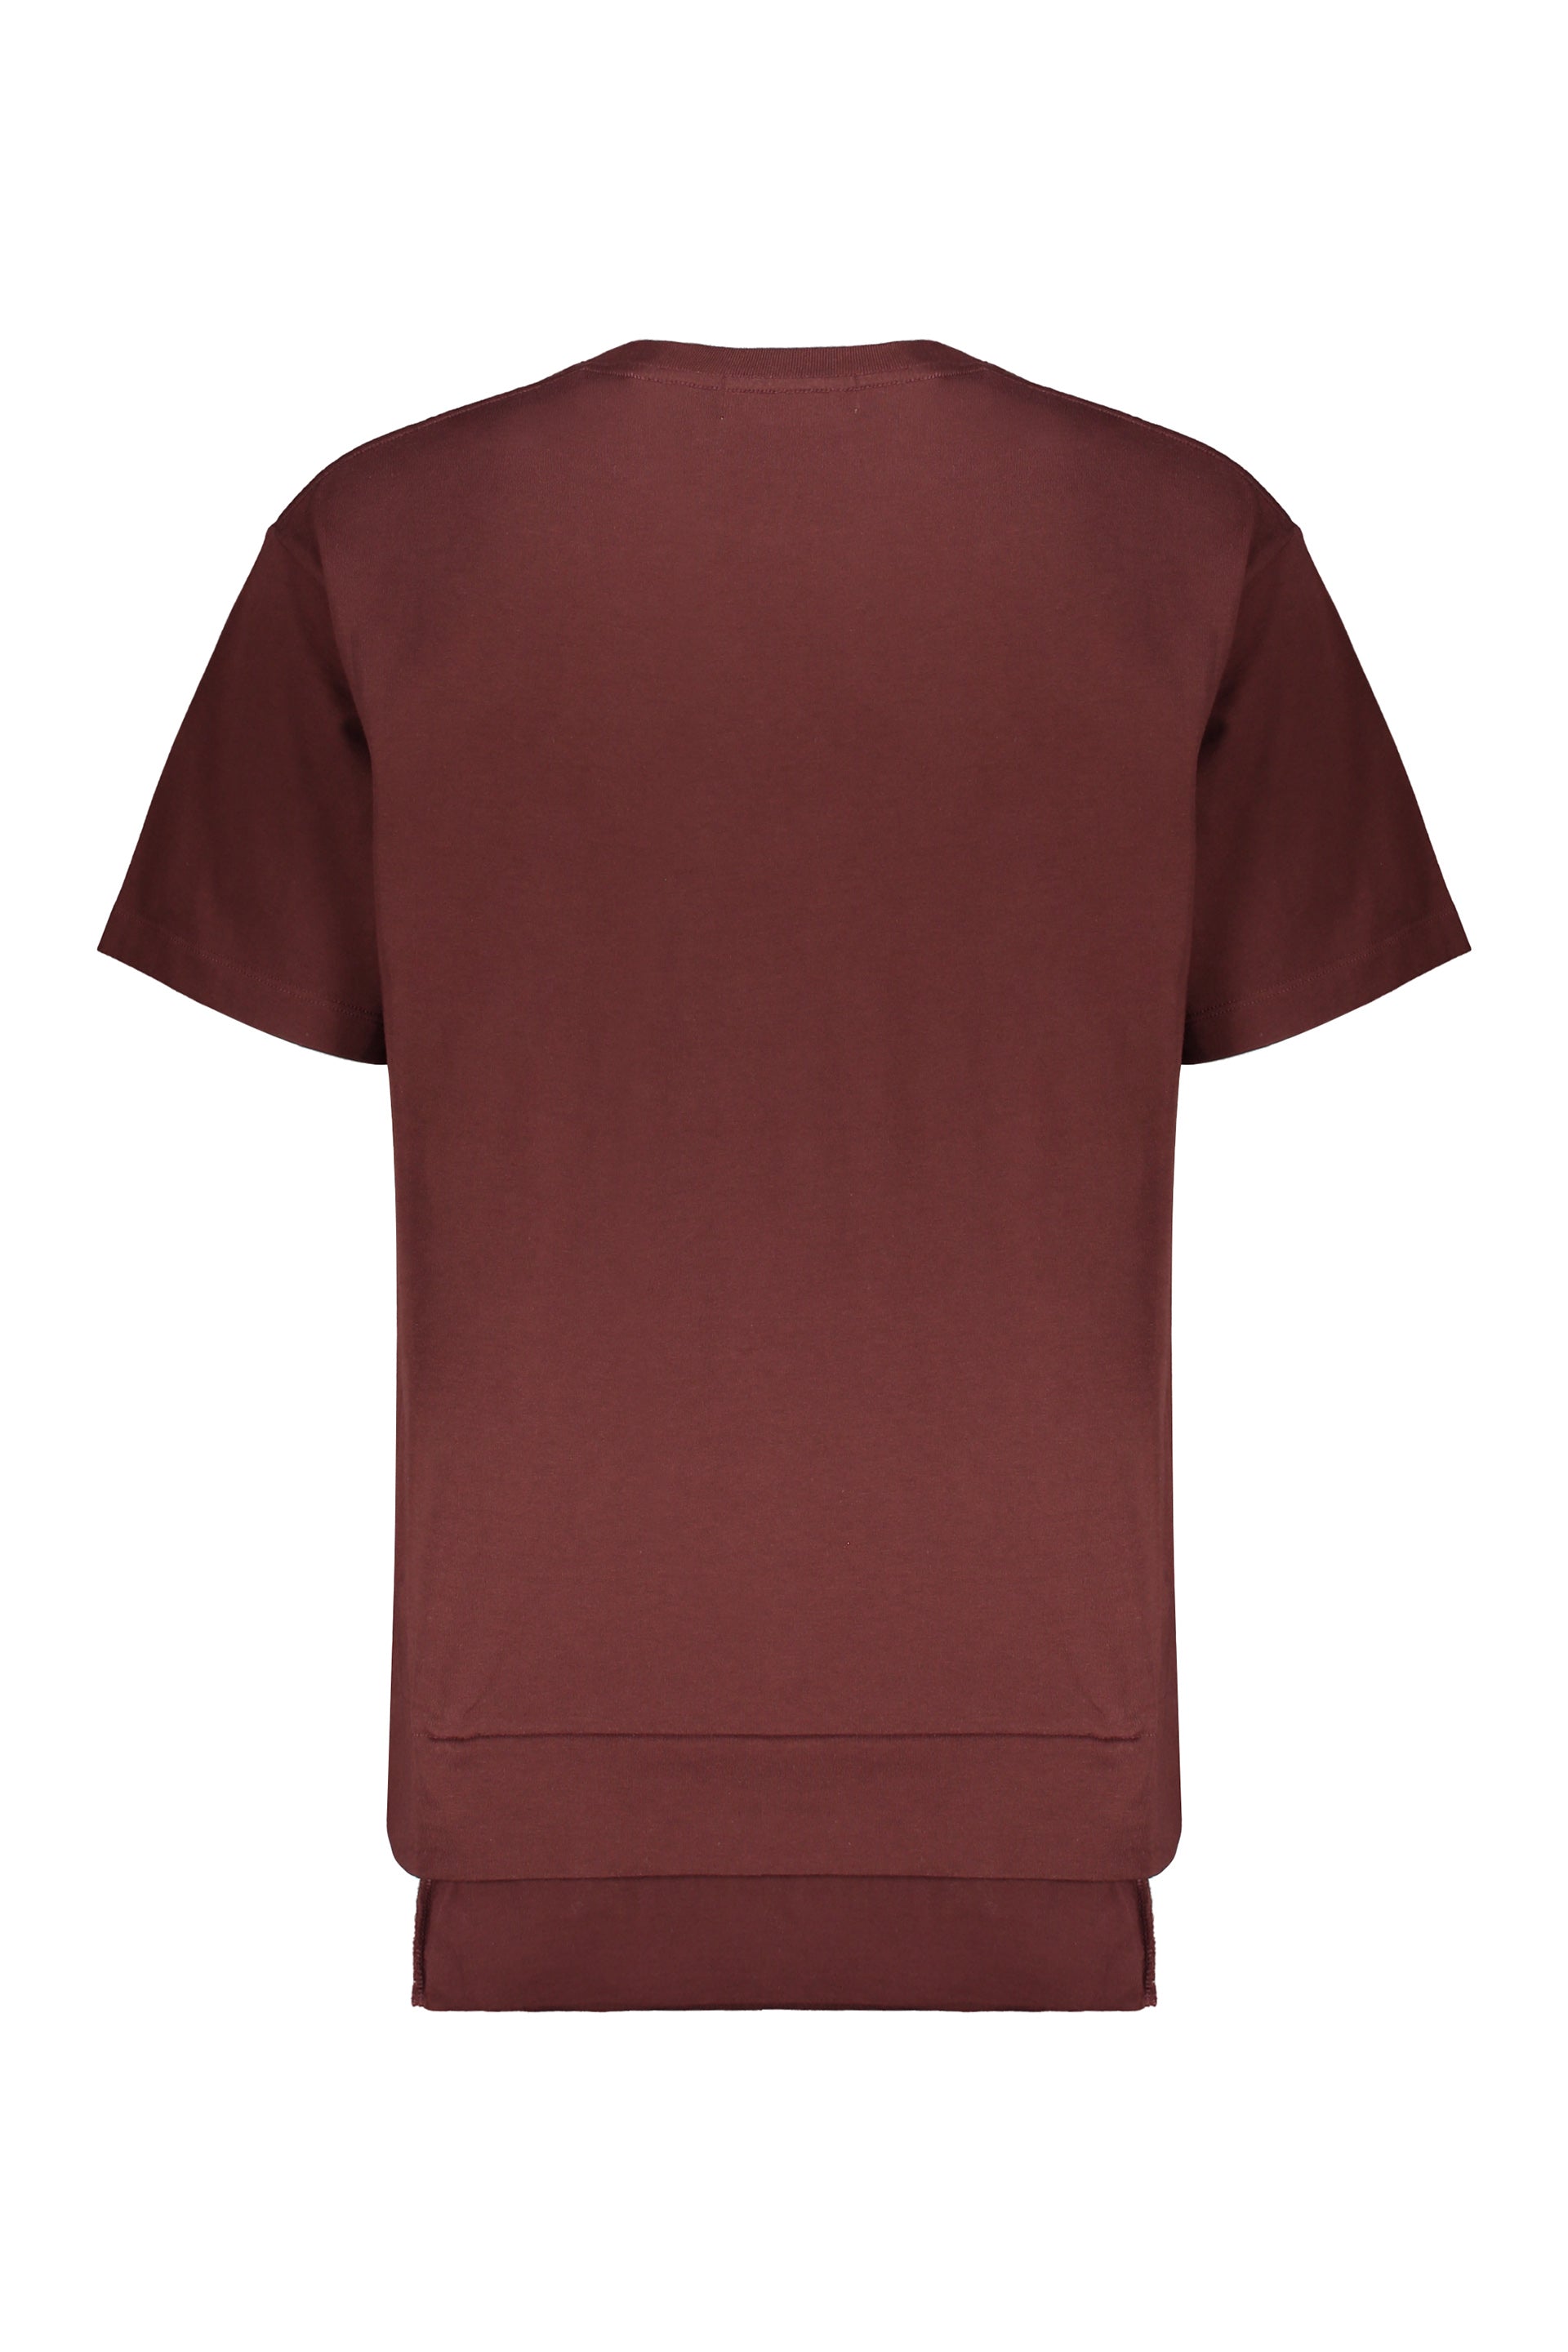 AMBUSH-OUTLET-SALE-Cotton-T-shirt-Shirts-ARCHIVE-COLLECTION-2.jpg